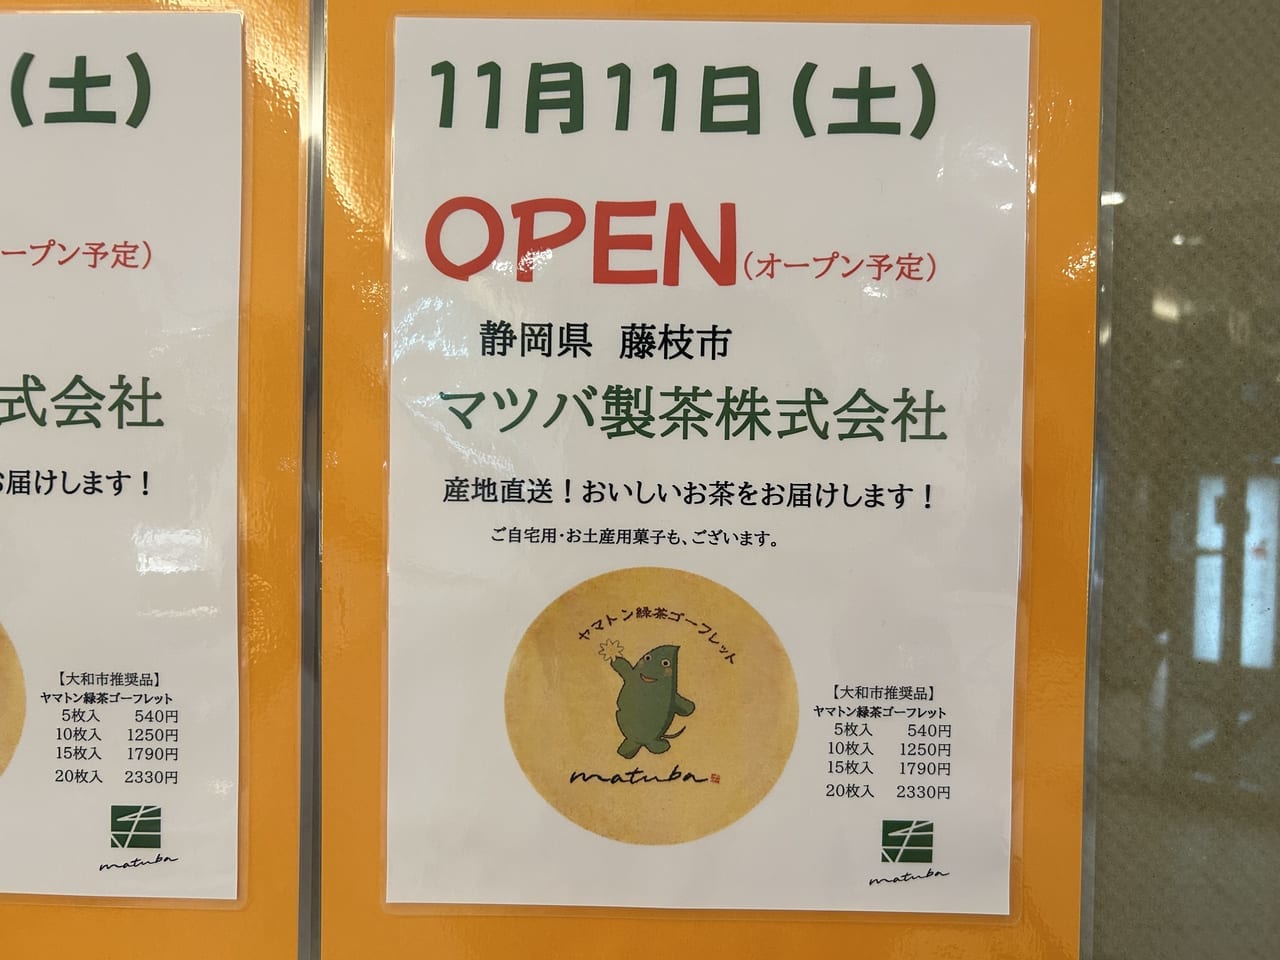 11月11日オープンのマツバ製茶のお知らせ